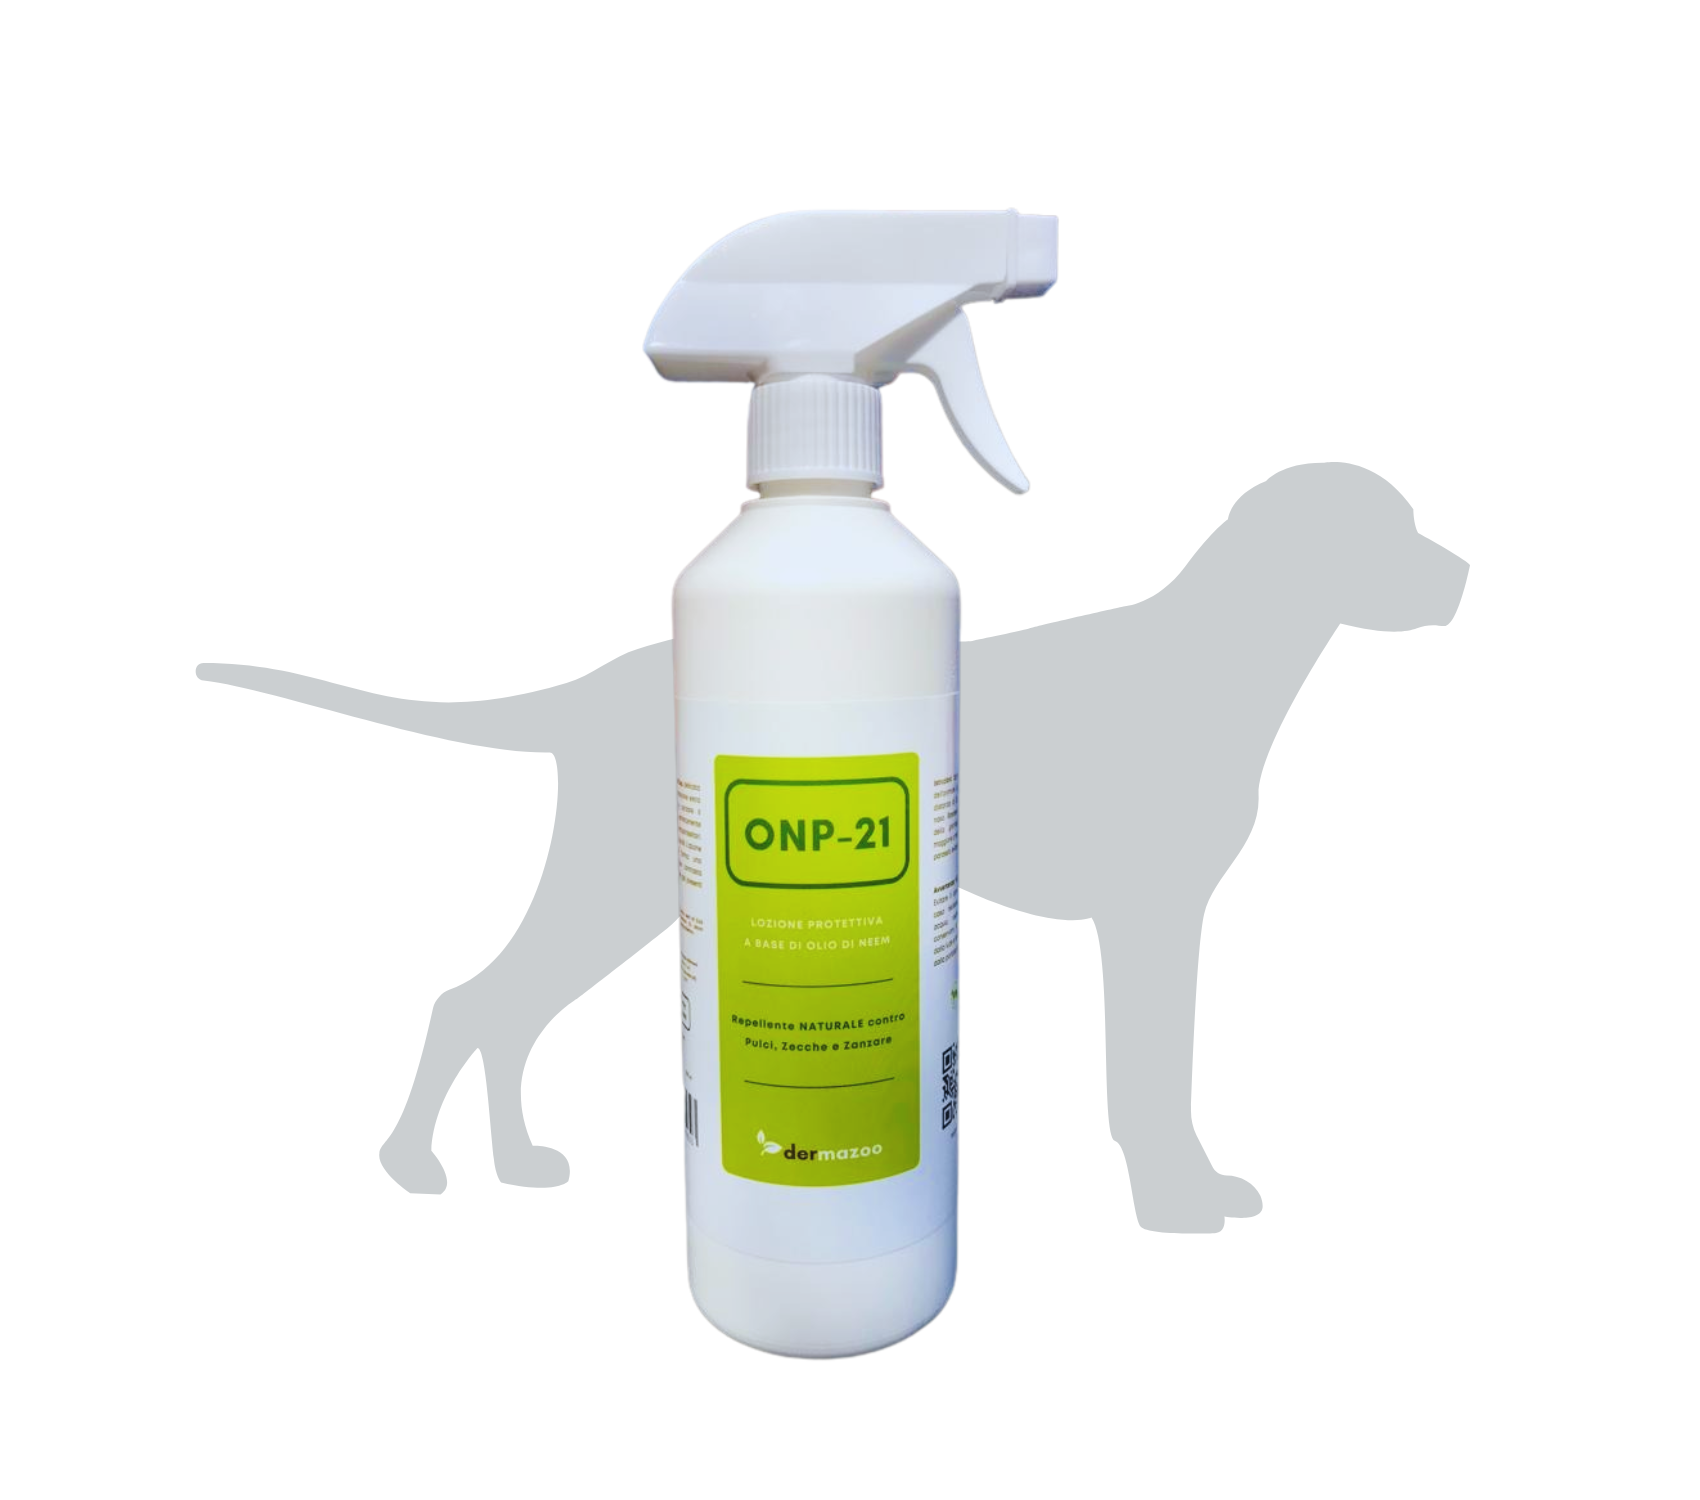 Shopmazoo - Olio di Neem per Cani Spray - shopmazoo